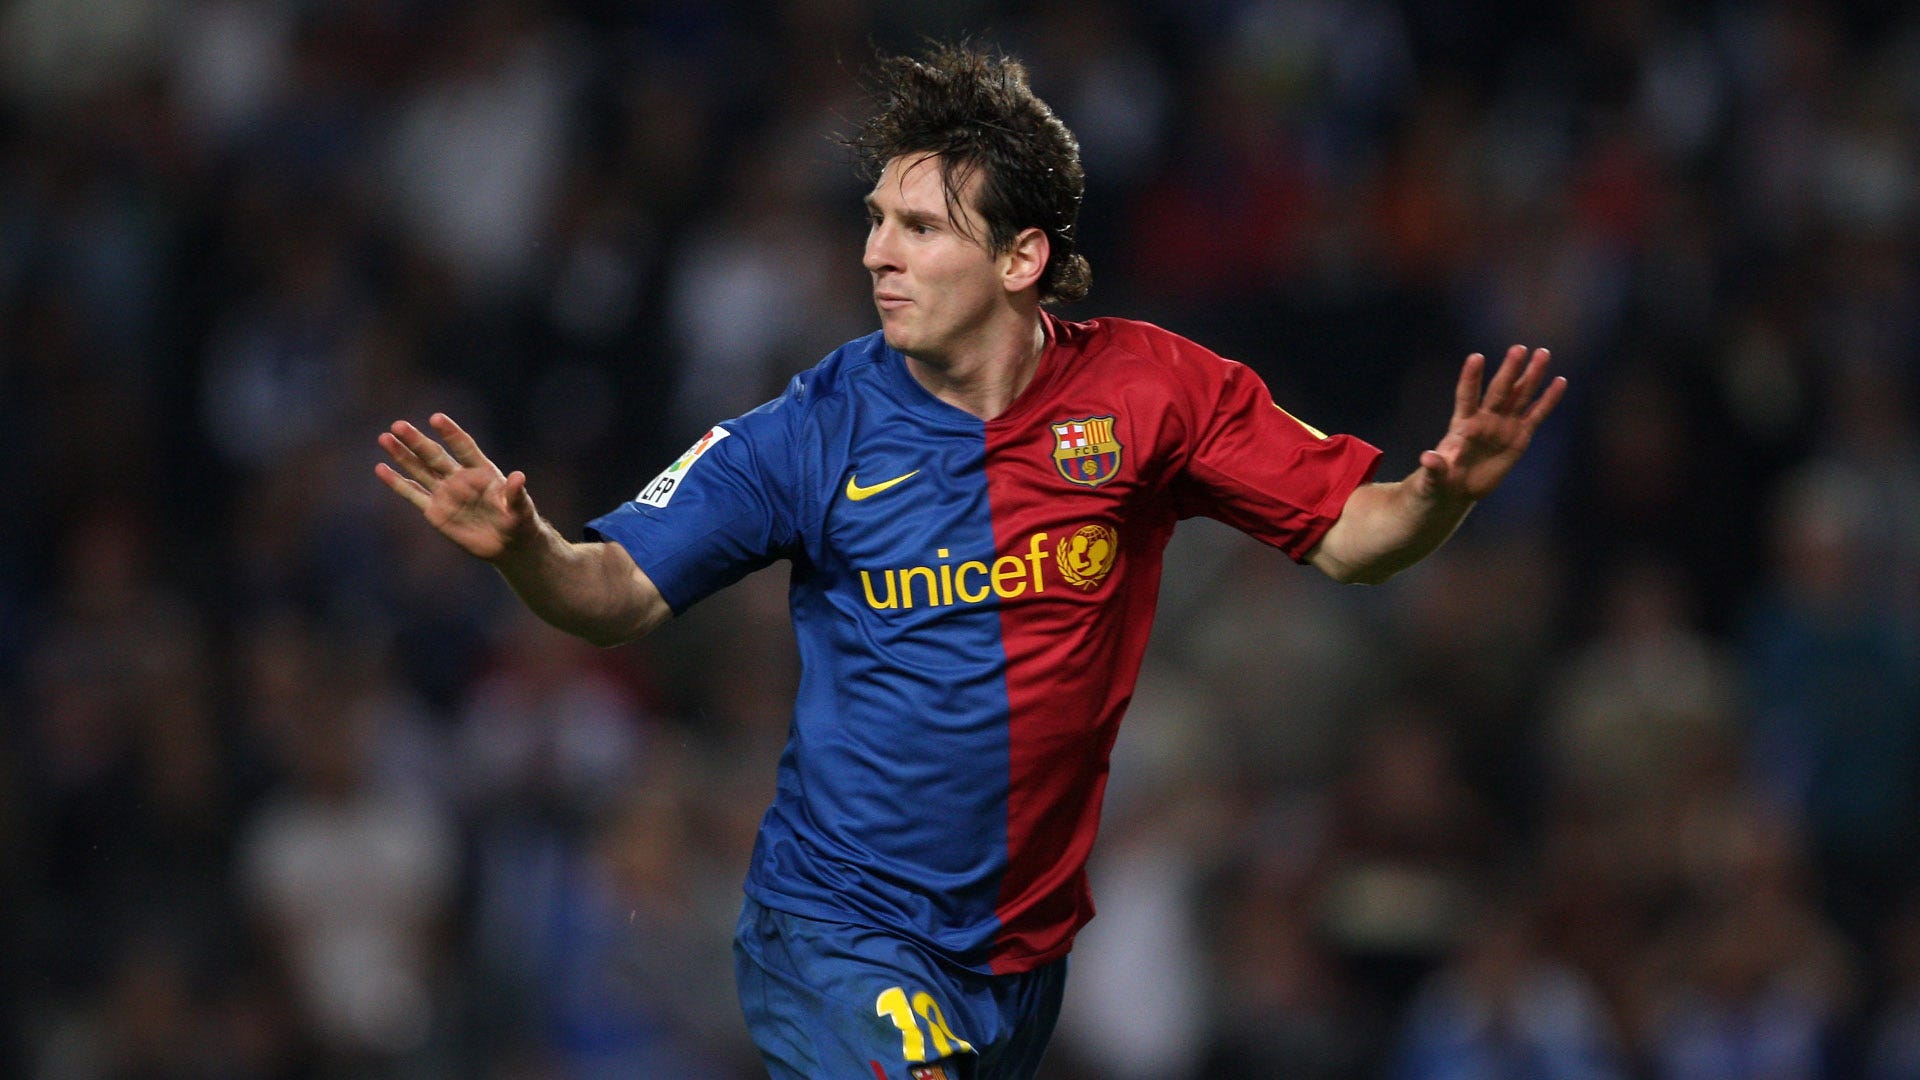 Há 10 anos, Messi estreava com a camisa 10 do Barcelona | Goal.com Brasil